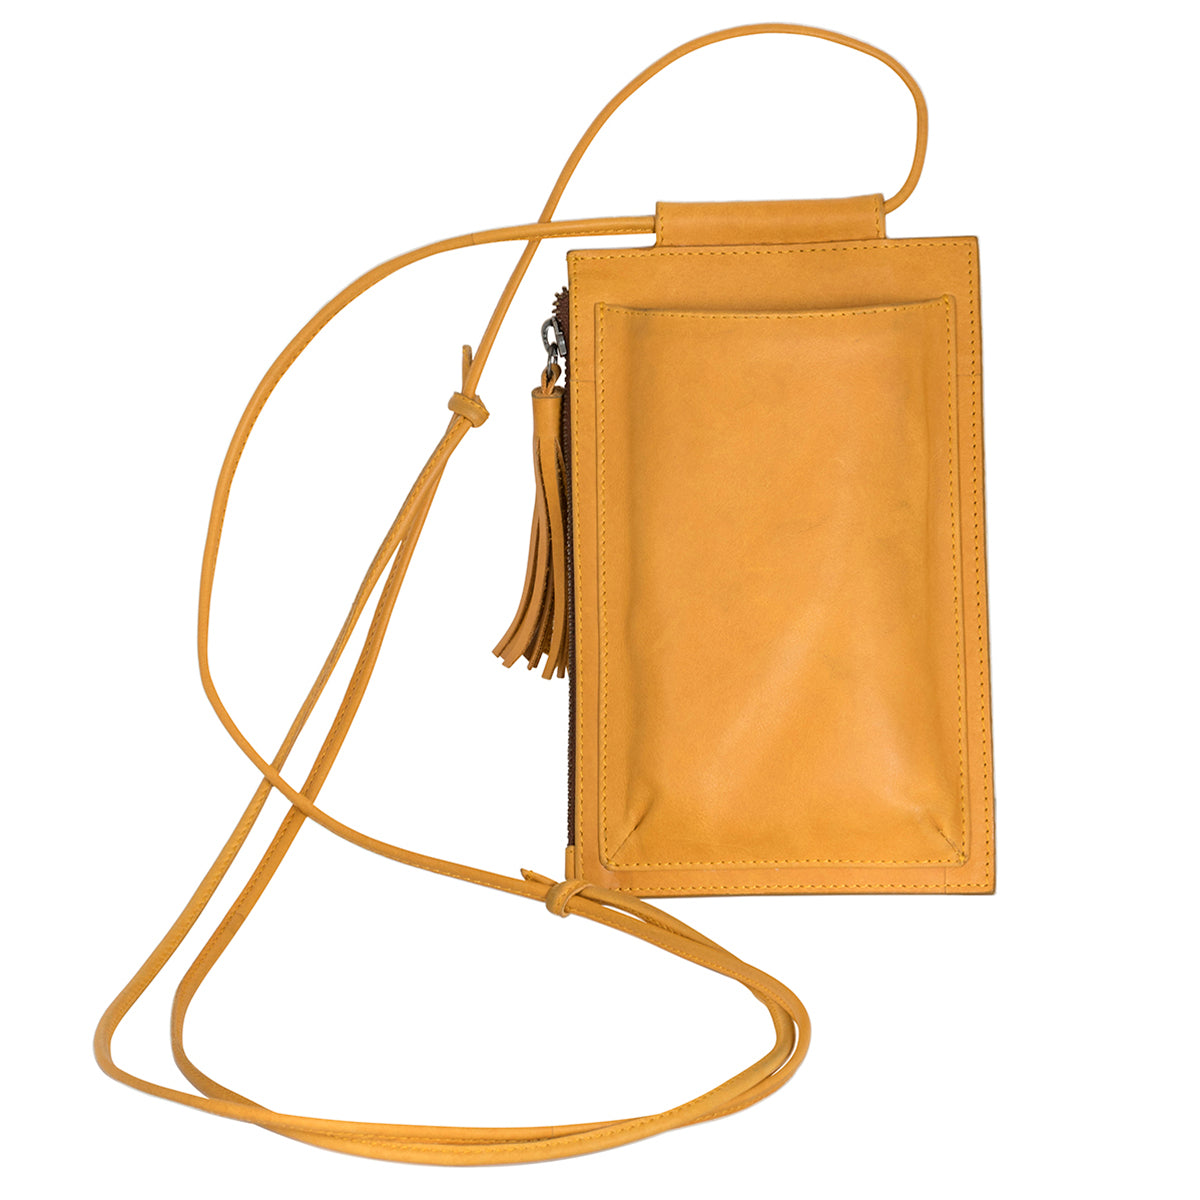 Cellphone sling bag